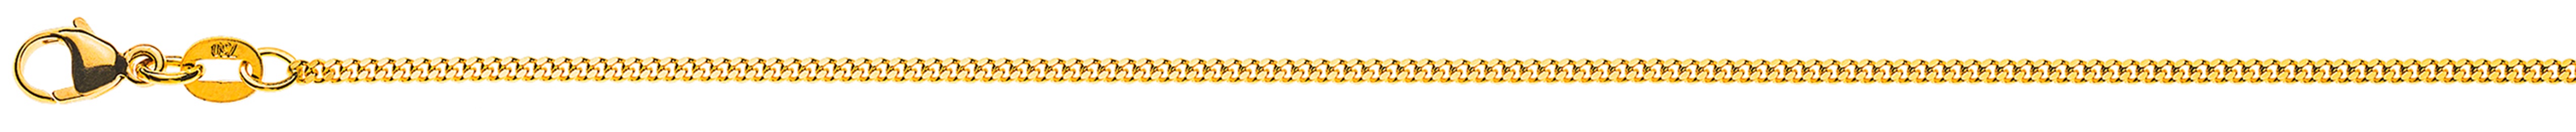 AURONOS Élégance Necklace yellow gold 14K curb chain polished 60cm 1.6mm